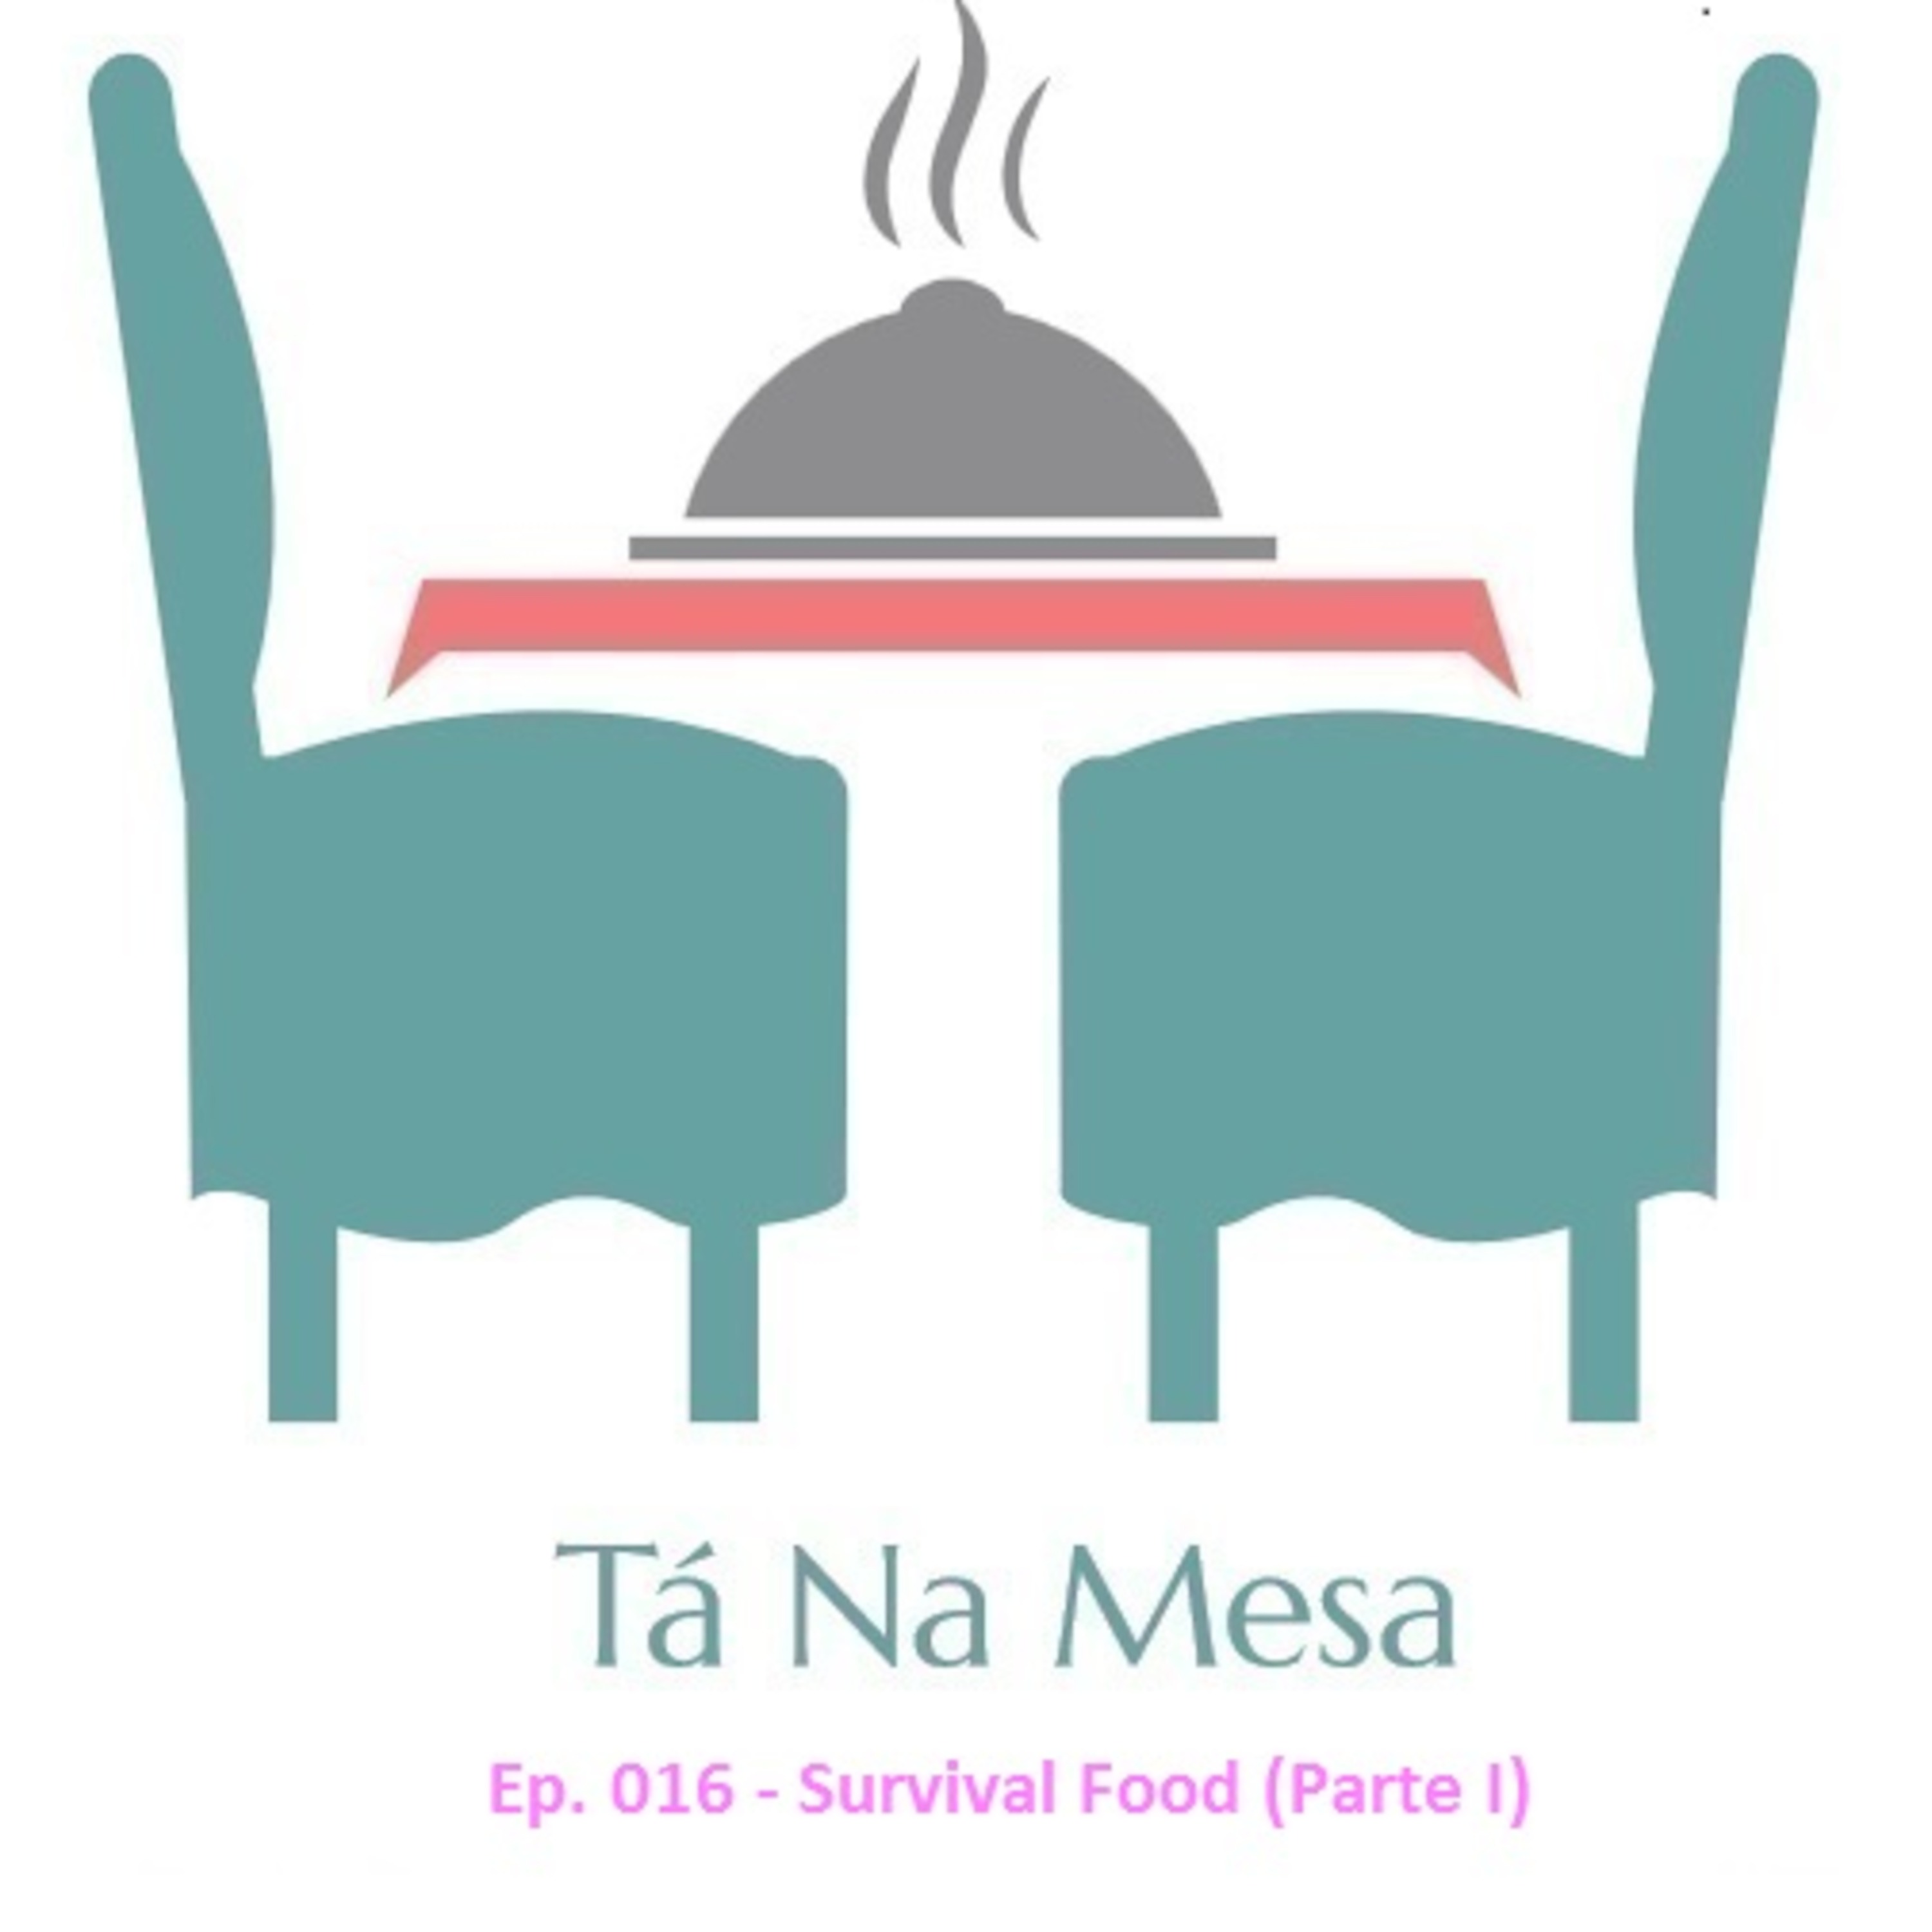 Tá Na Mesa - Ep. 016 - Survival Food - Parte I